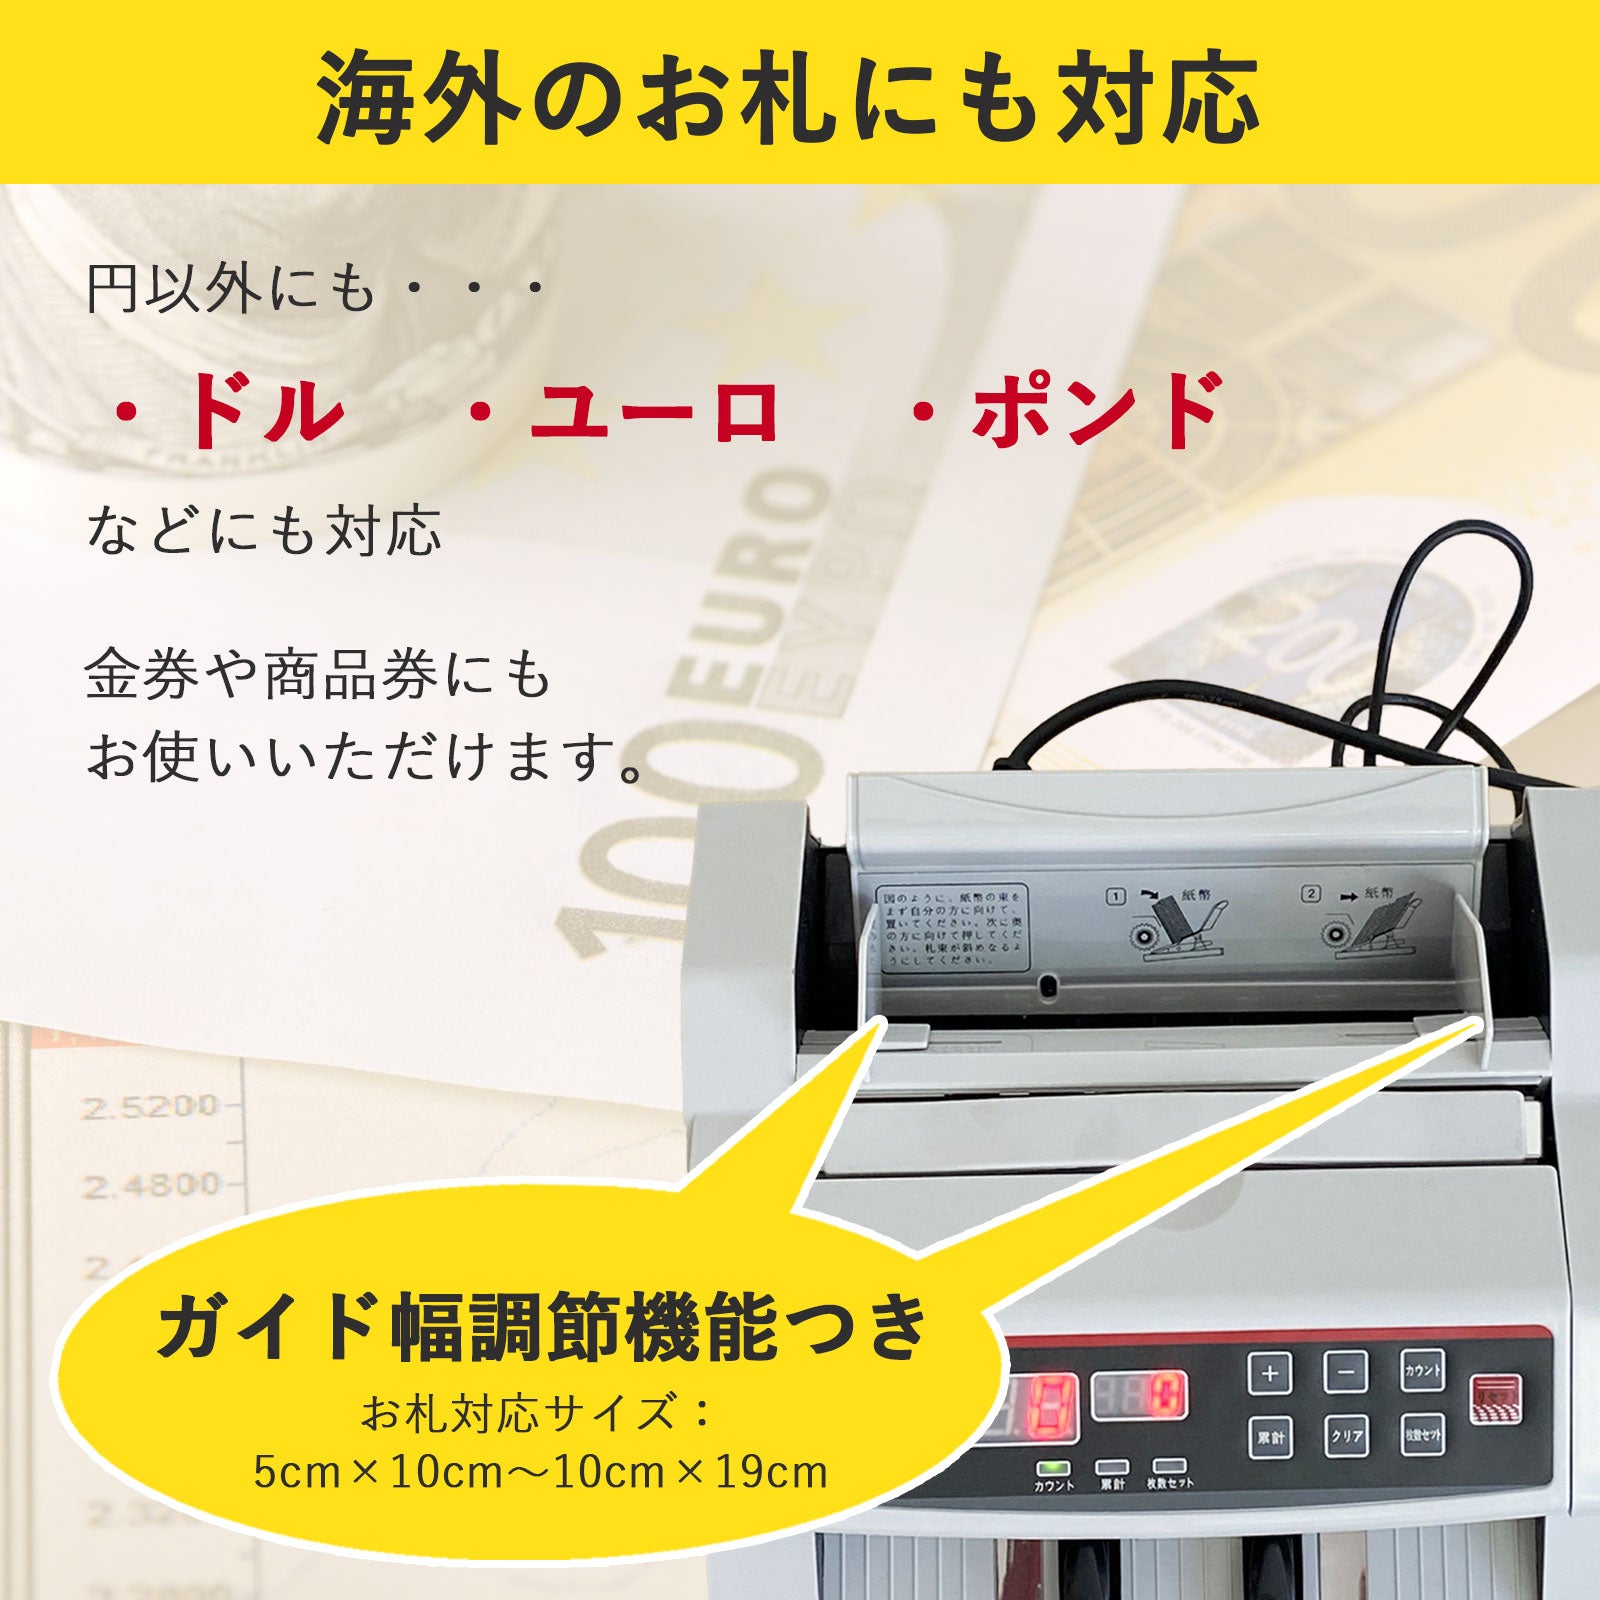 日本に 偽札チェック機能付 高速紙幣計算機 マネーカウンター 卓上カウンター 金カウンター 紙幣カウンター お札カウンター 数える 